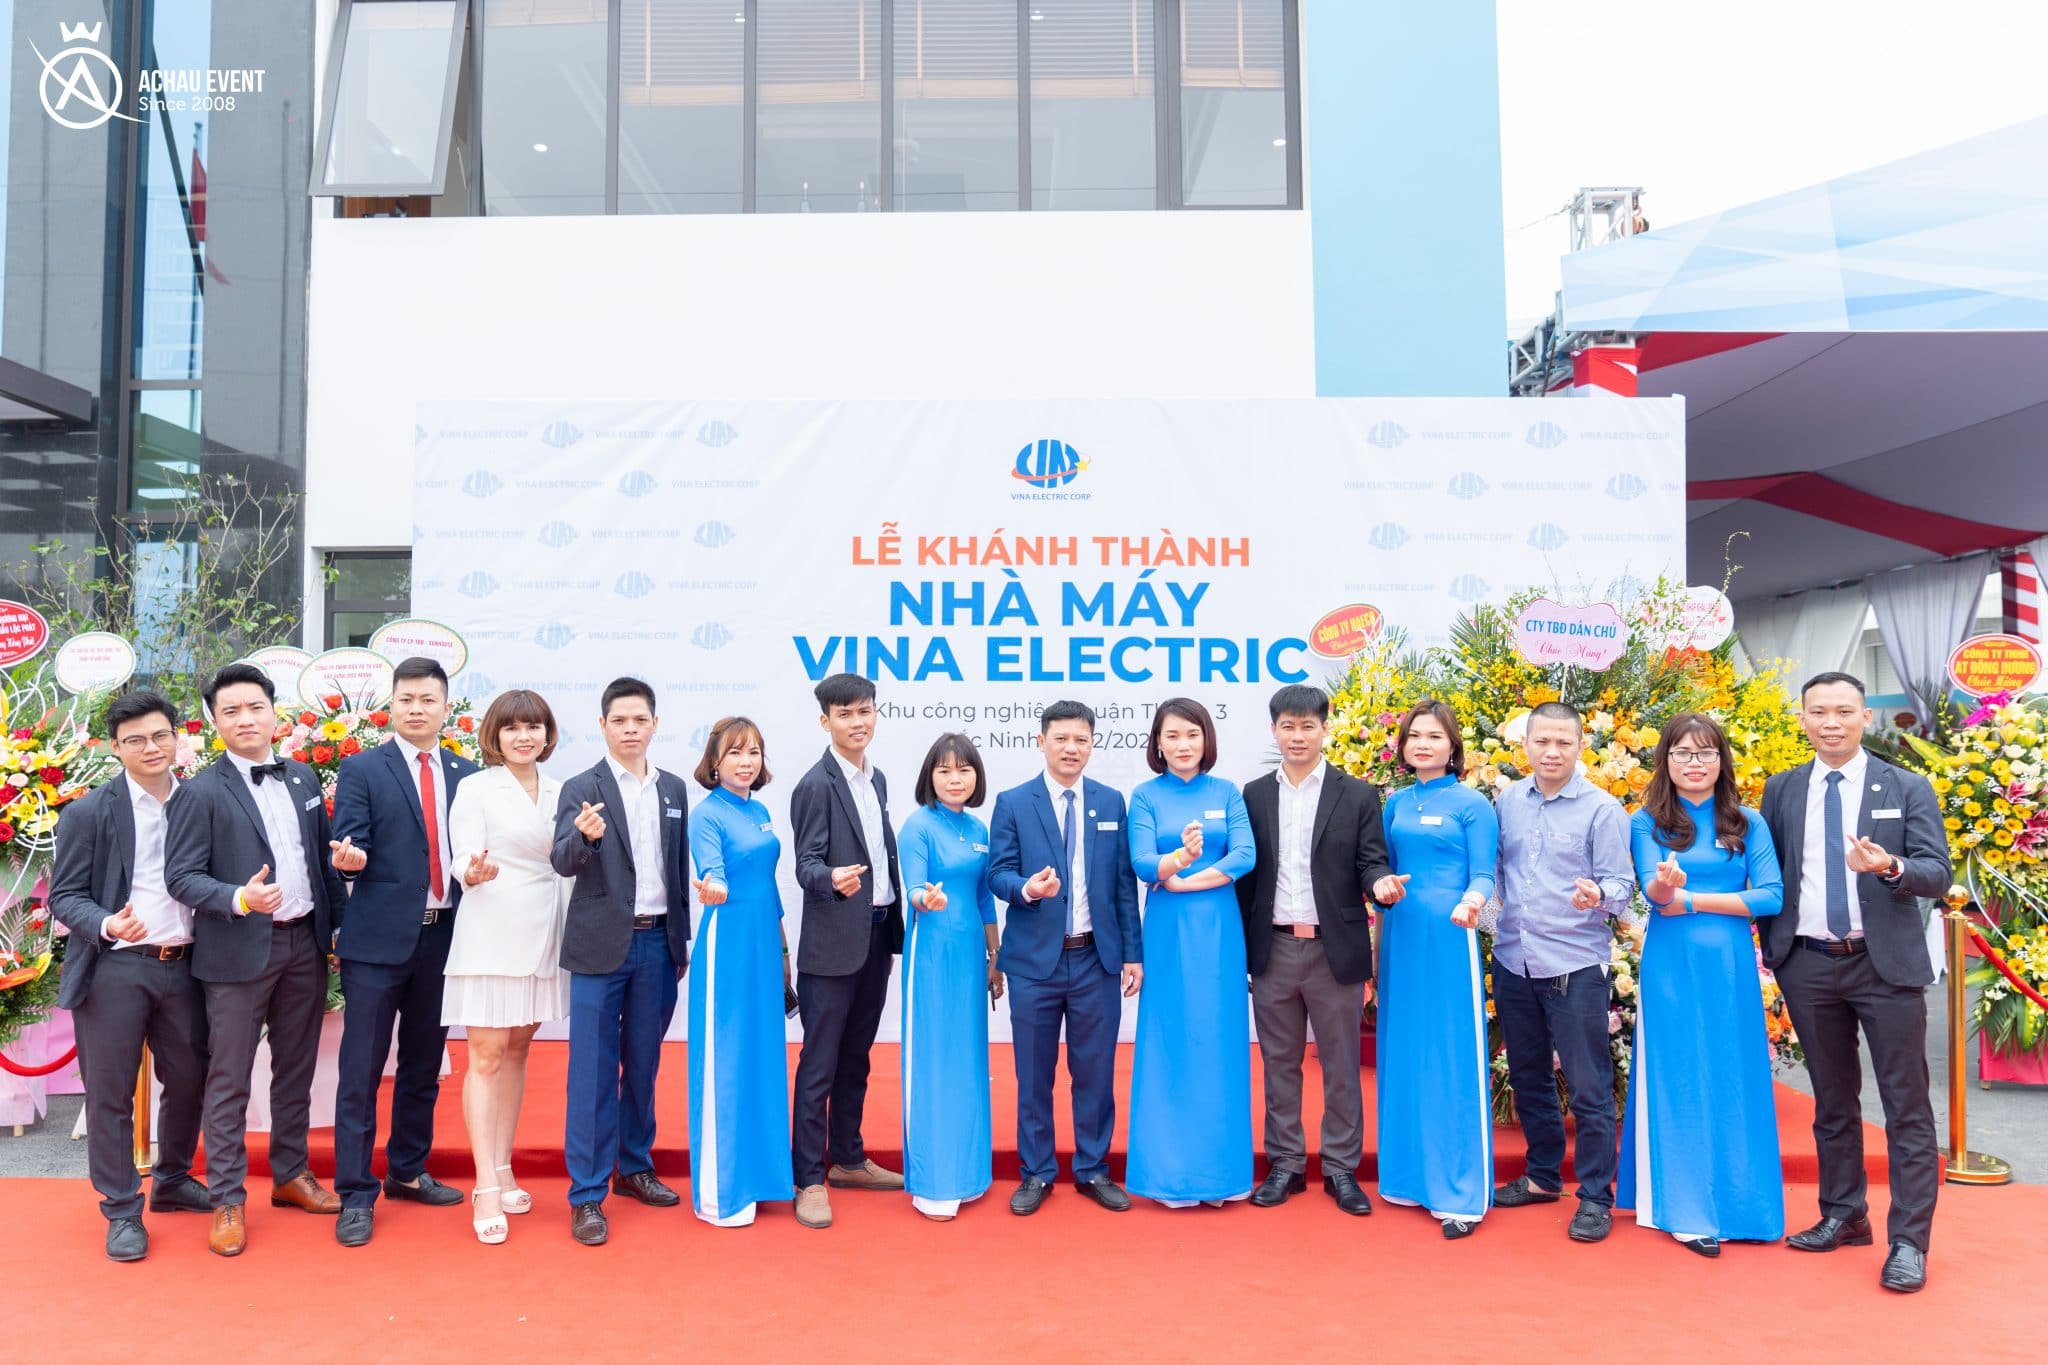 Đội ngũ cán bộ nhân viên của nhà máy Vina Electric